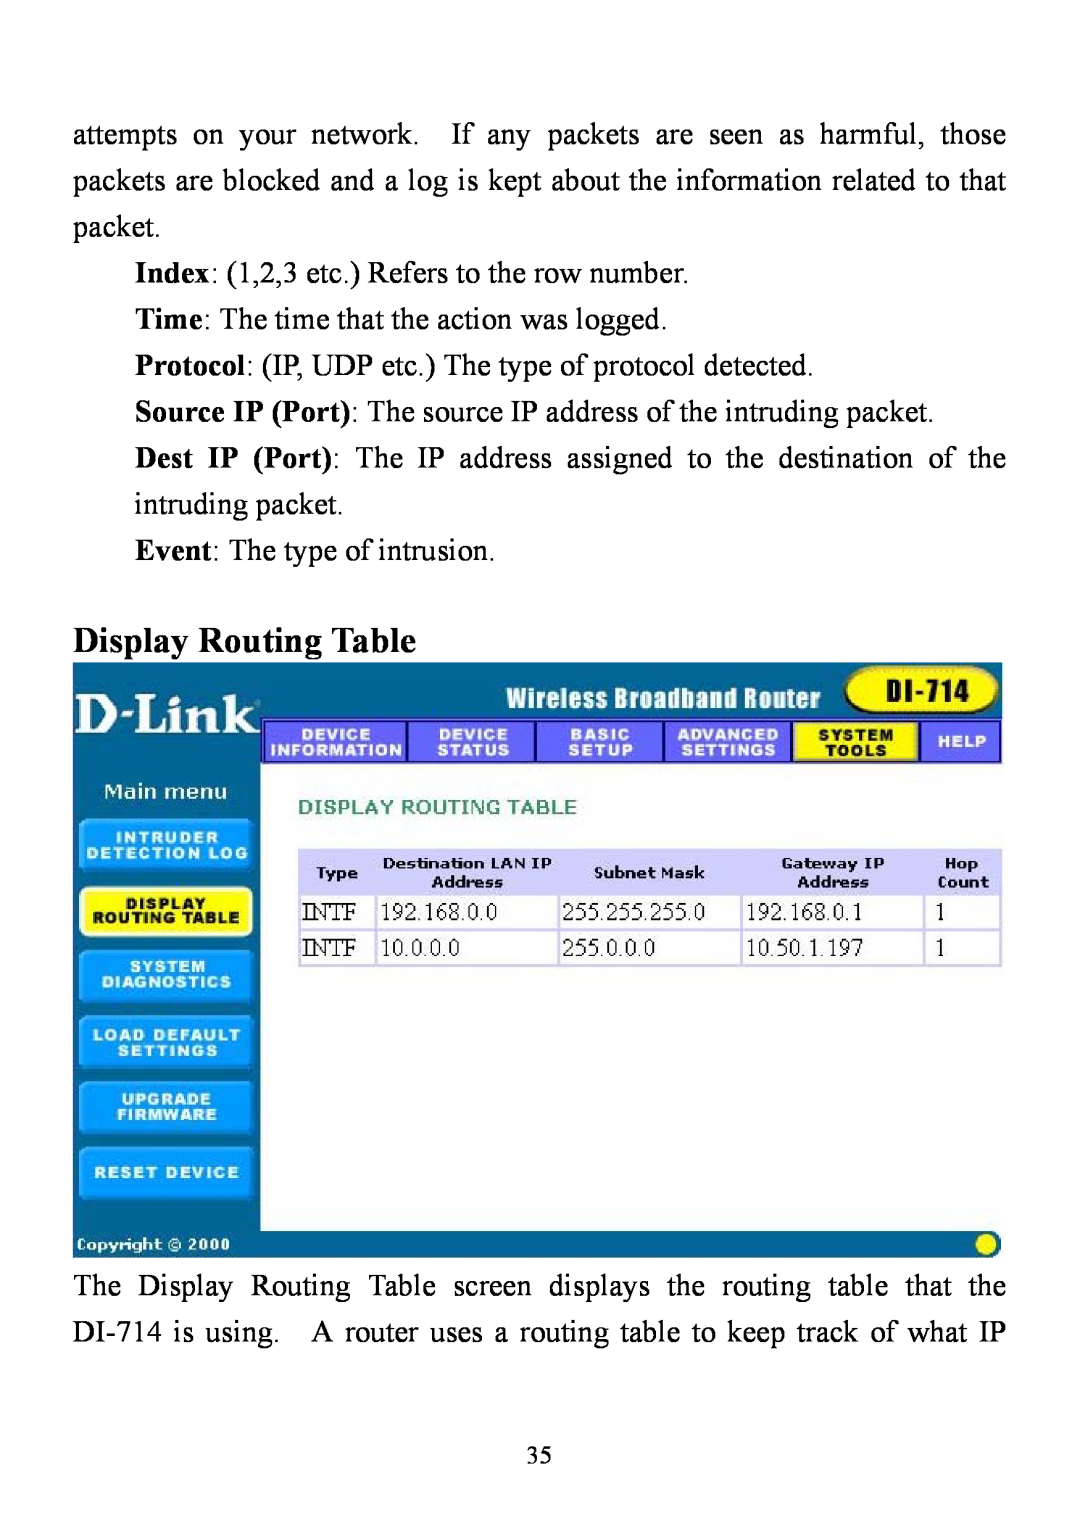 D-Link DI-714 user manual Display Routing Table 